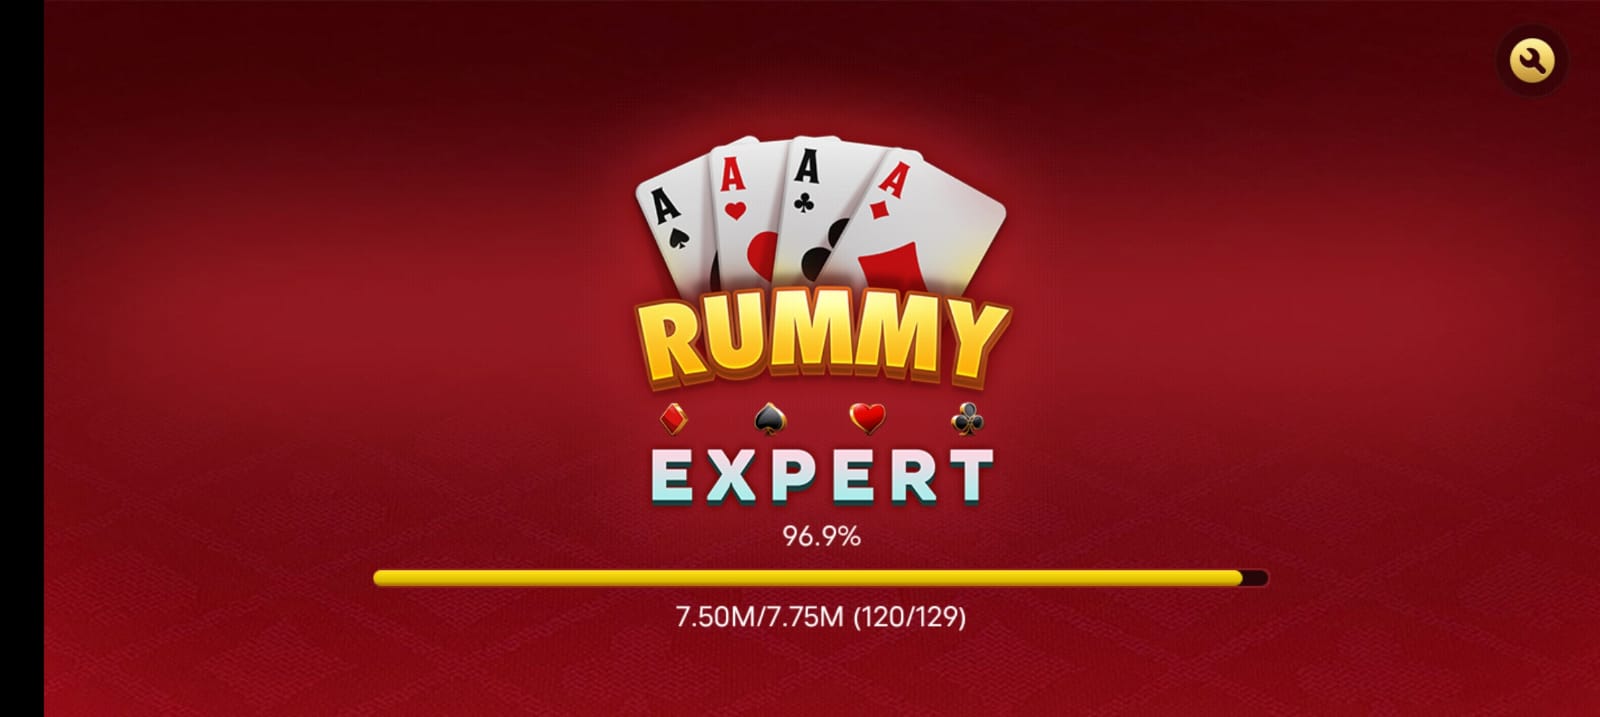 Rummy Expert Application